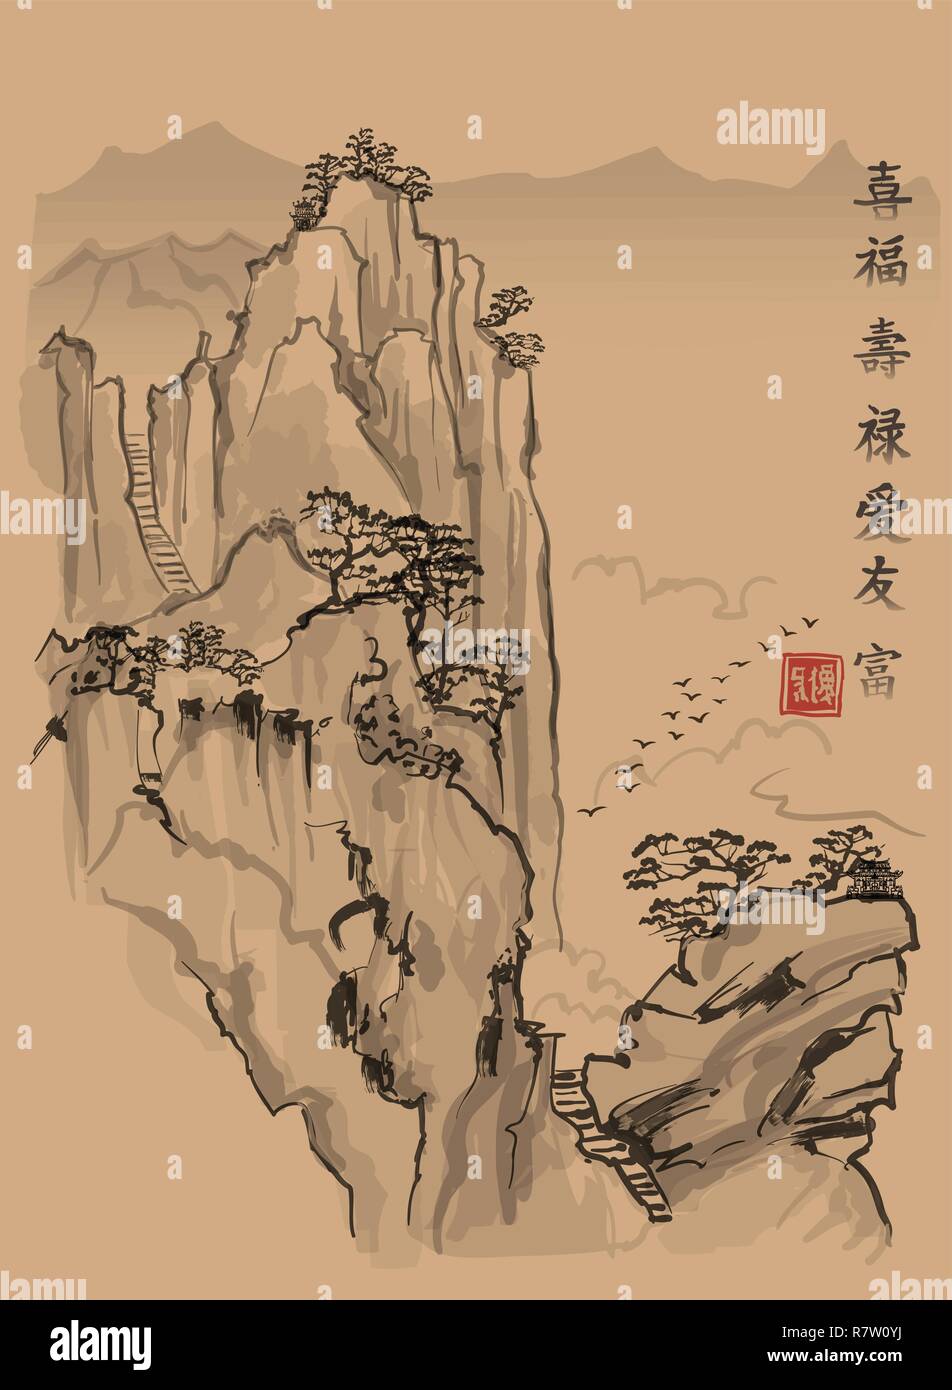 Paysage chinois avec vue sur la montagne et nuages dans le style du vieux peinture chinoise - Sens de l'illustration vectorielle, les caractères chinois à partir de la top t Illustration de Vecteur